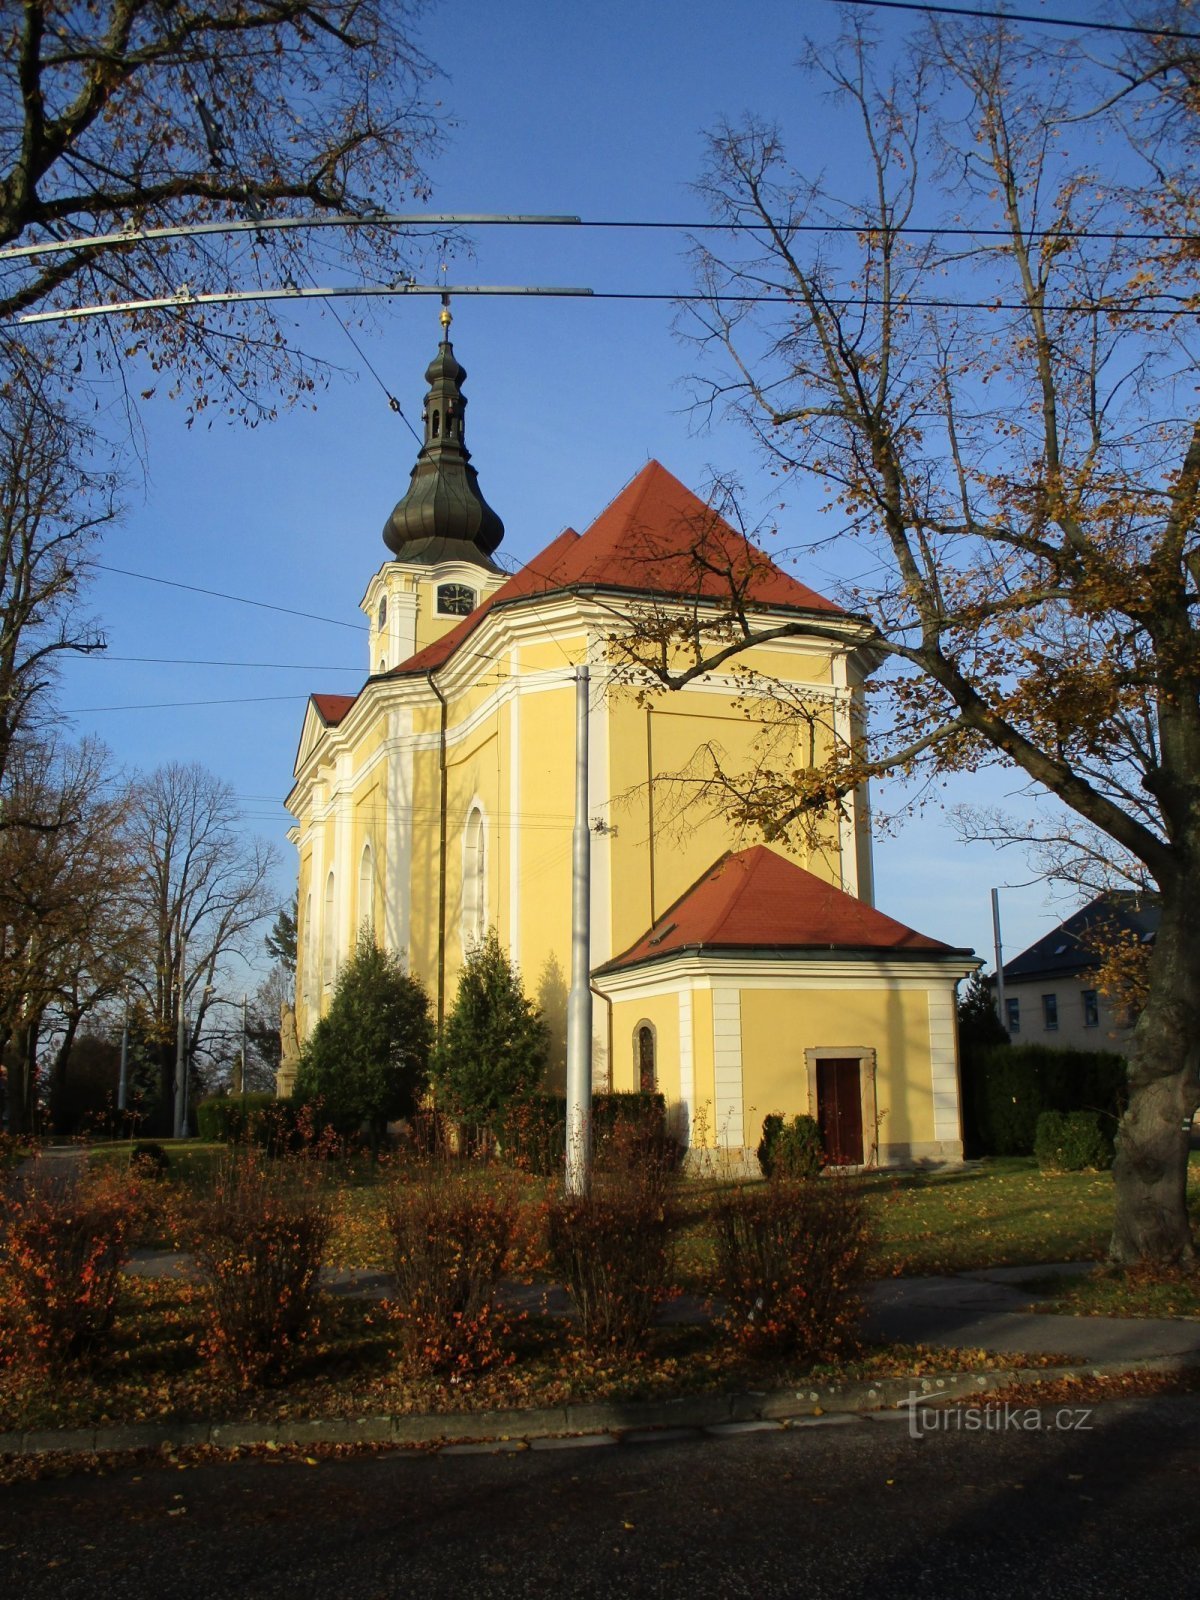 Nhà thờ St. Antonína, Trụ trì Nové Hradec Králové (Hradec Králové, 17.11.2019/XNUMX/XNUMX)